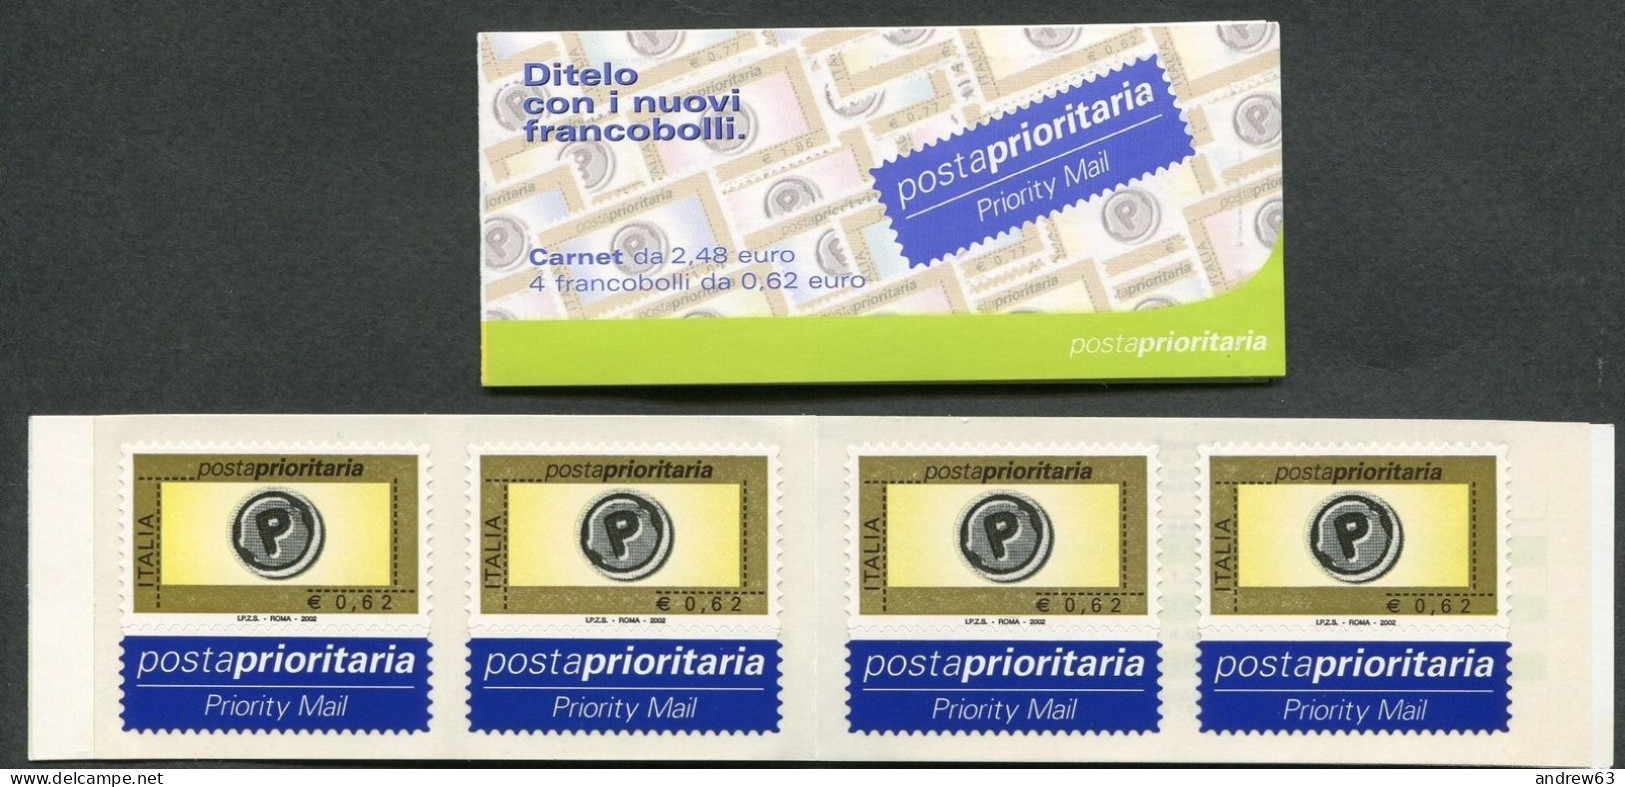 ITALIA - 2002 - Libretto Posta Prioritaria Carnet Da 4 Francobolli Di € 0,62 Integri - Nuovo - Carnets